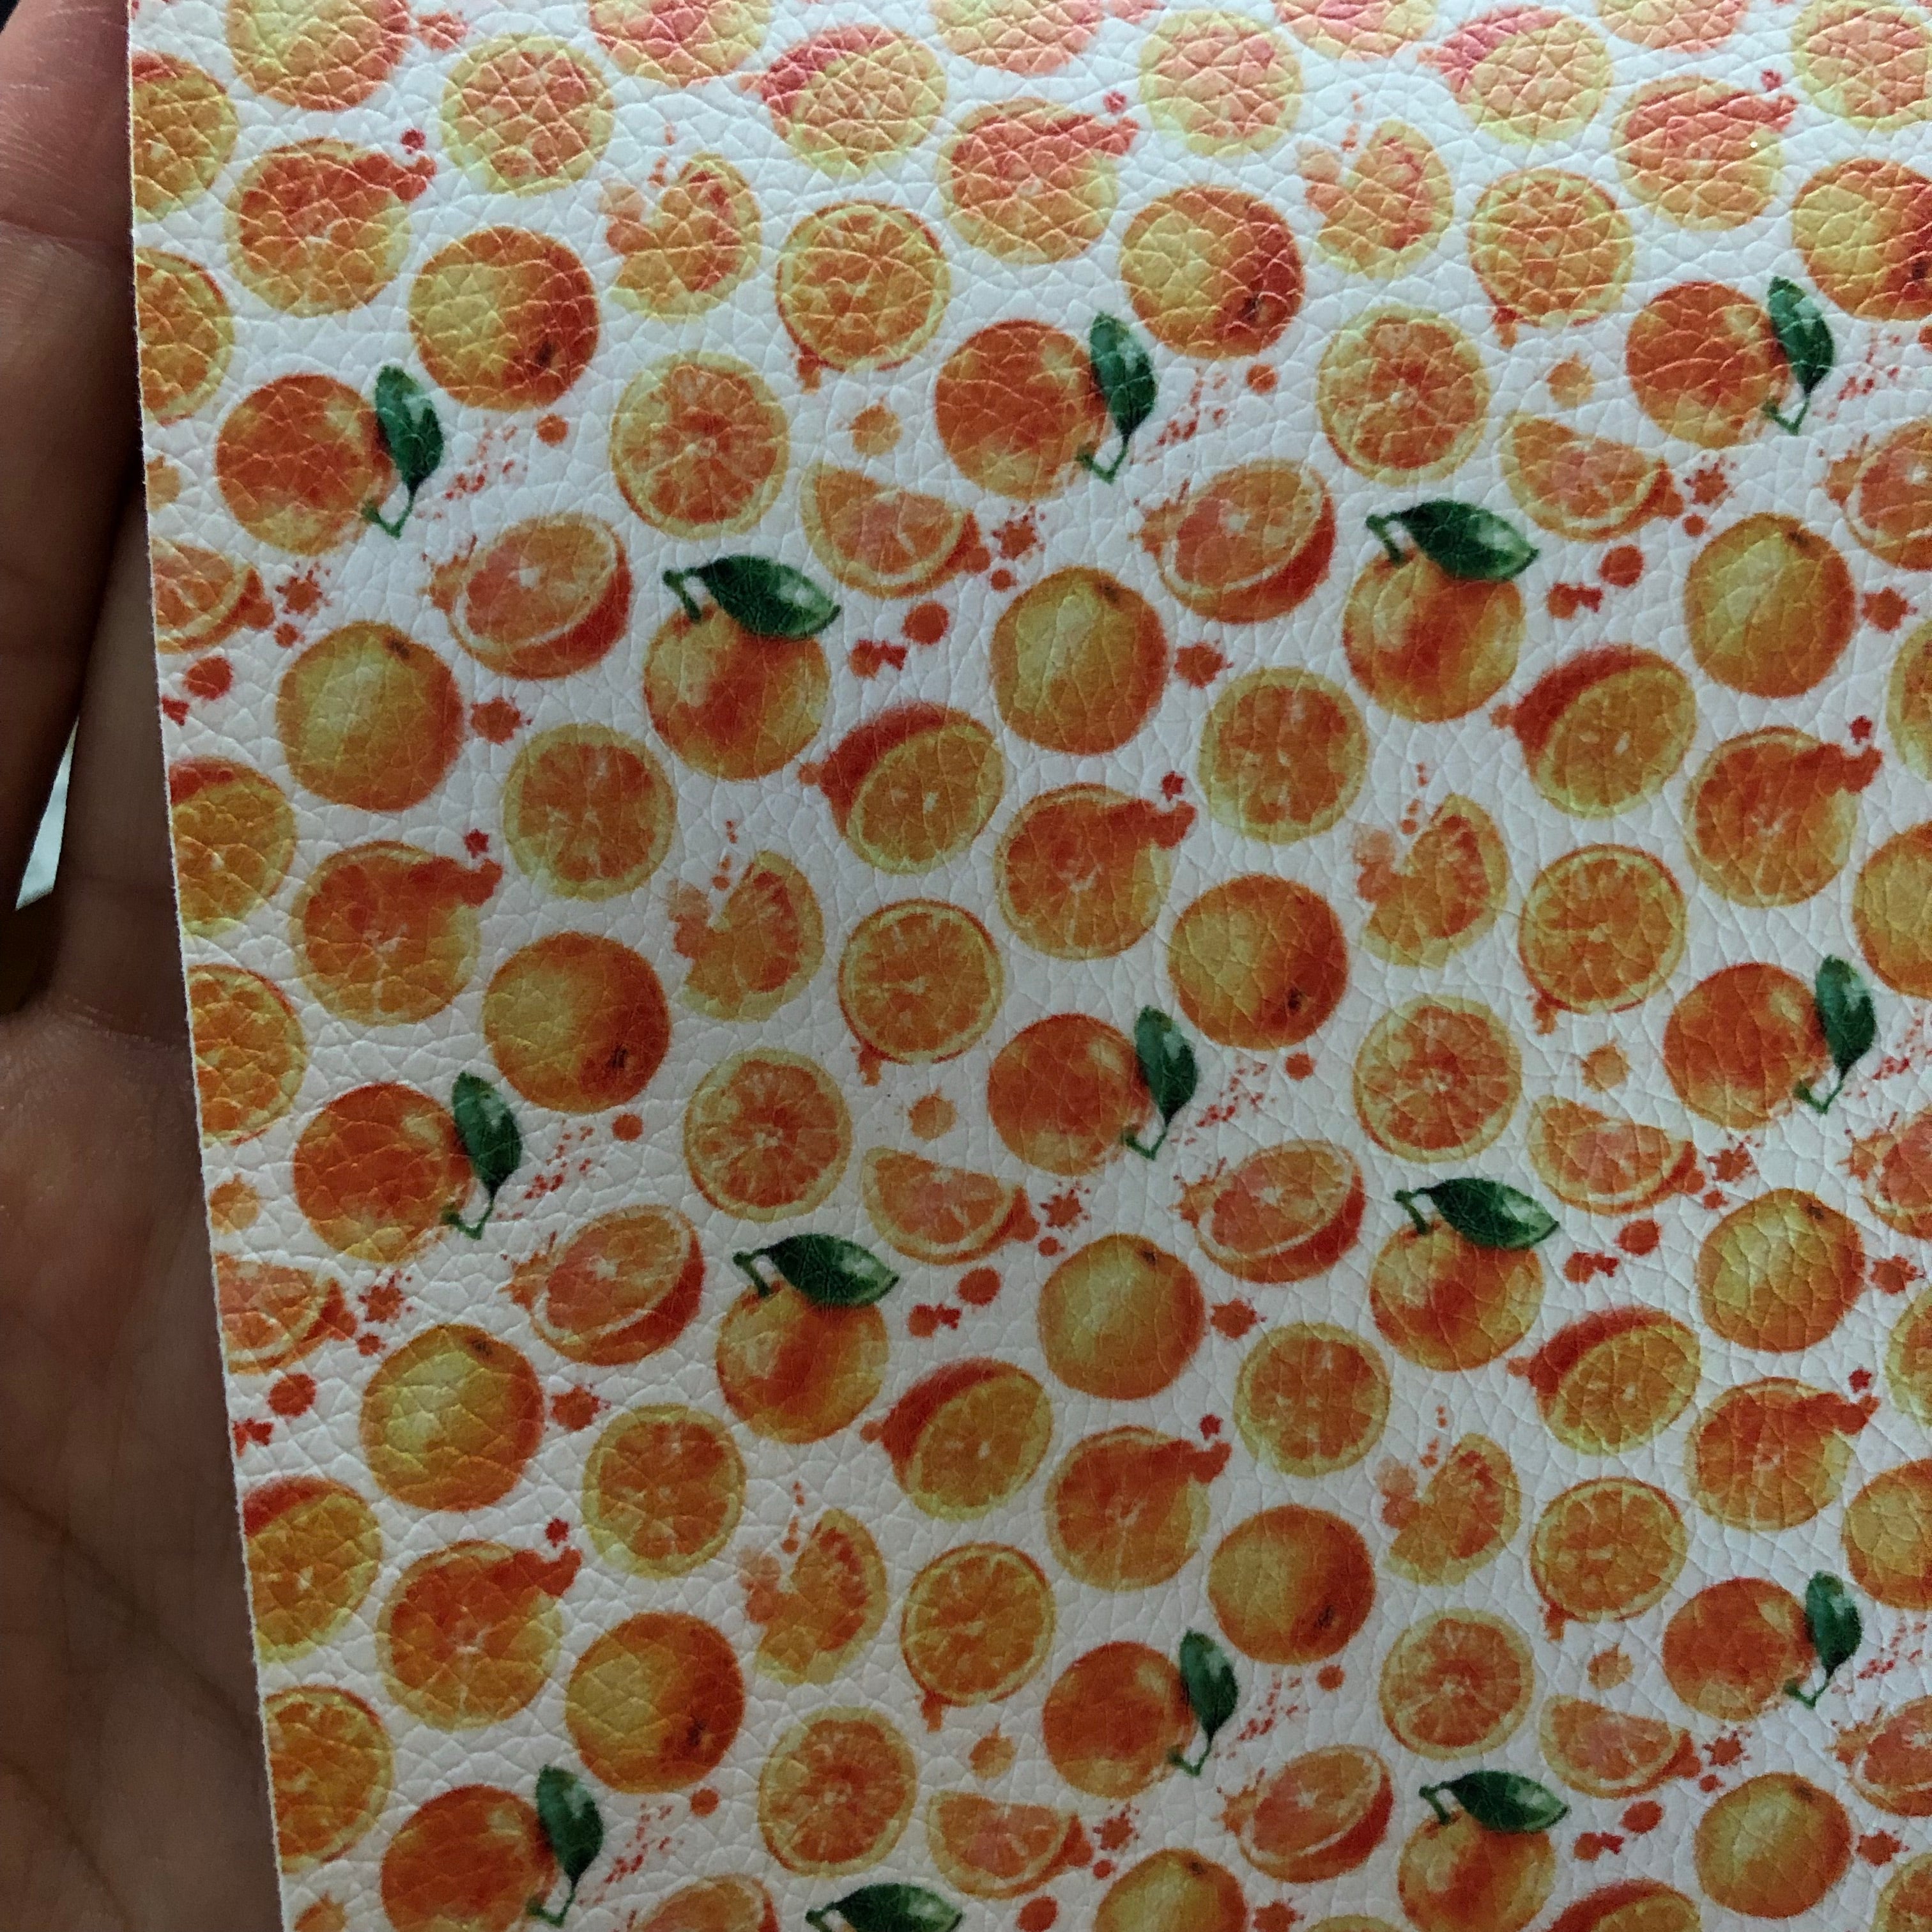 Orange fruit - Fall